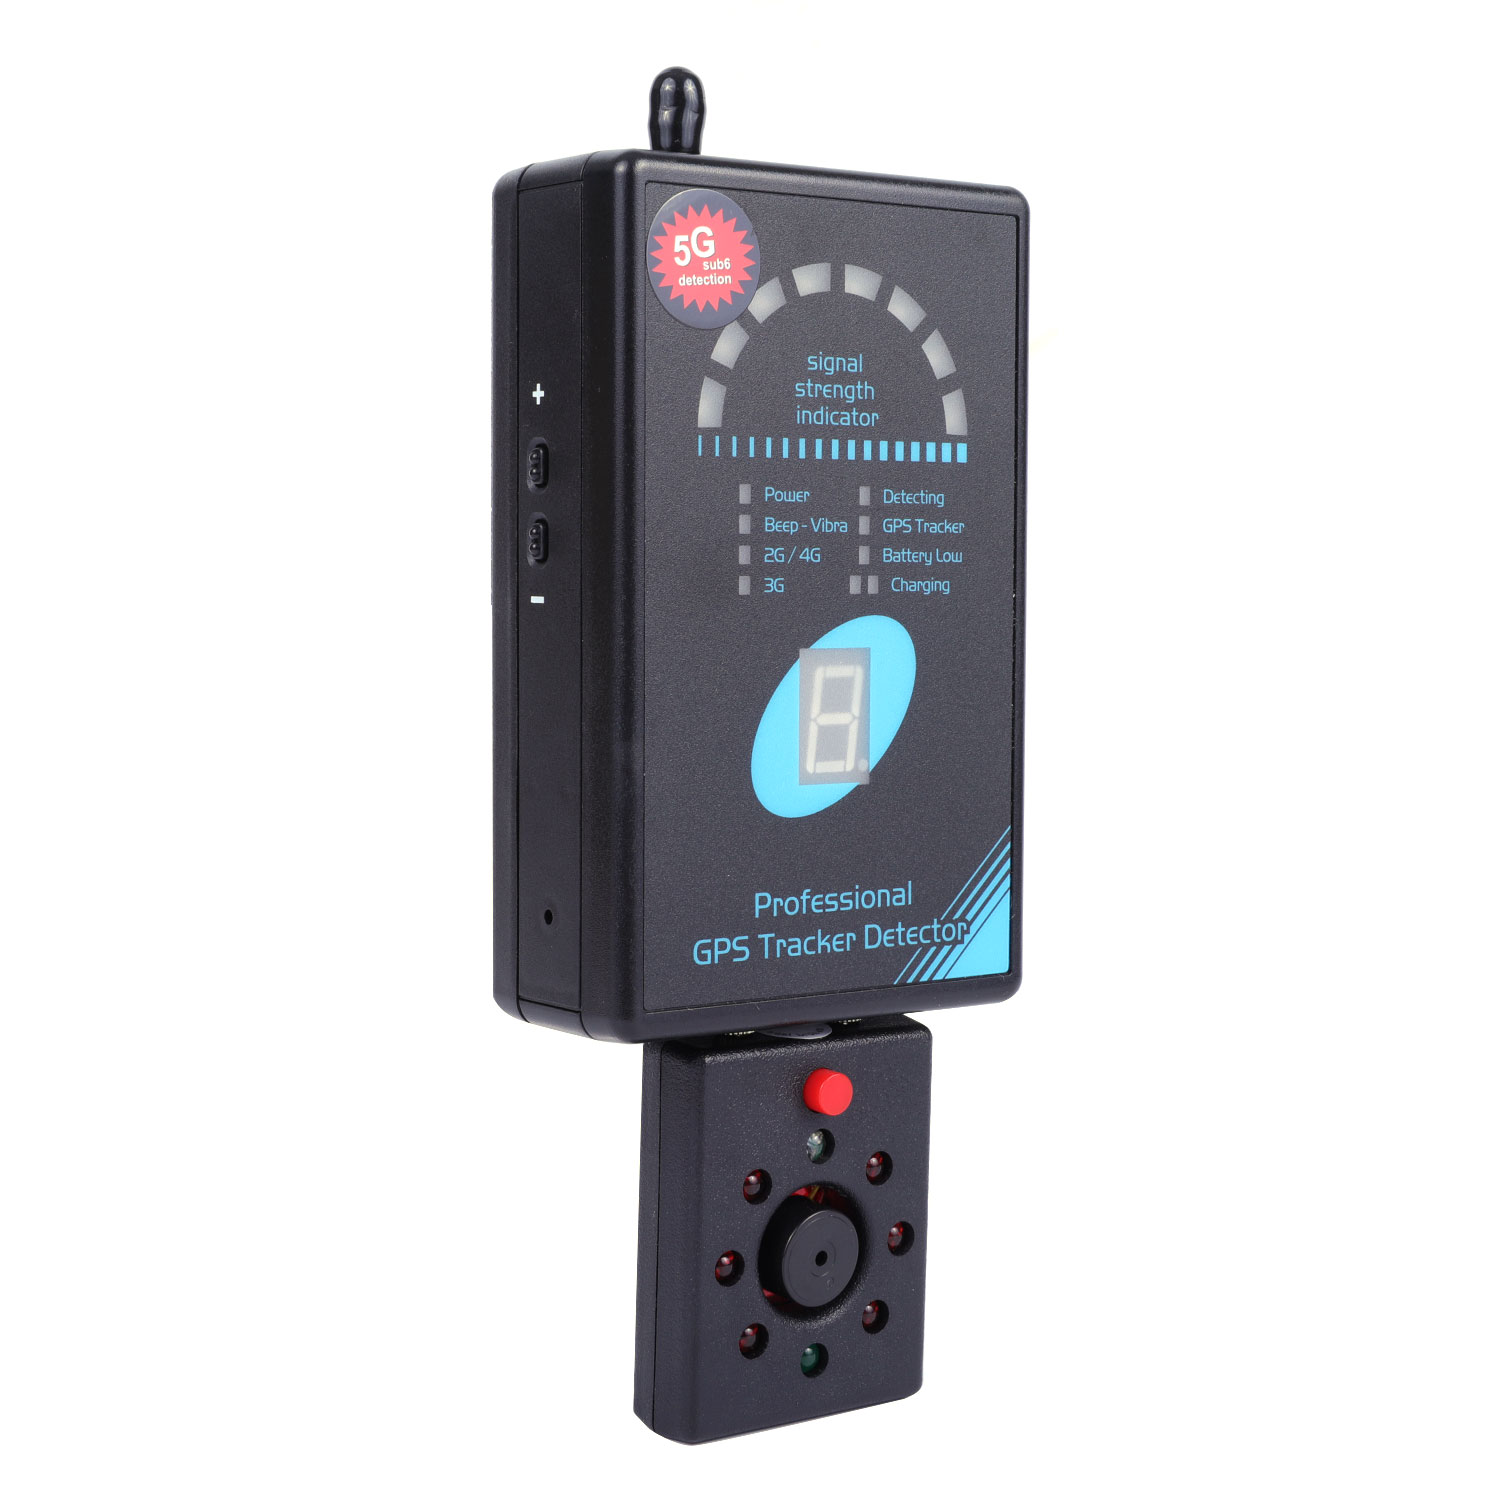 Детектор сигнала телефона 2G/3G/4G портативный Rf сканер камера детектор объектив искатель шпион жучок